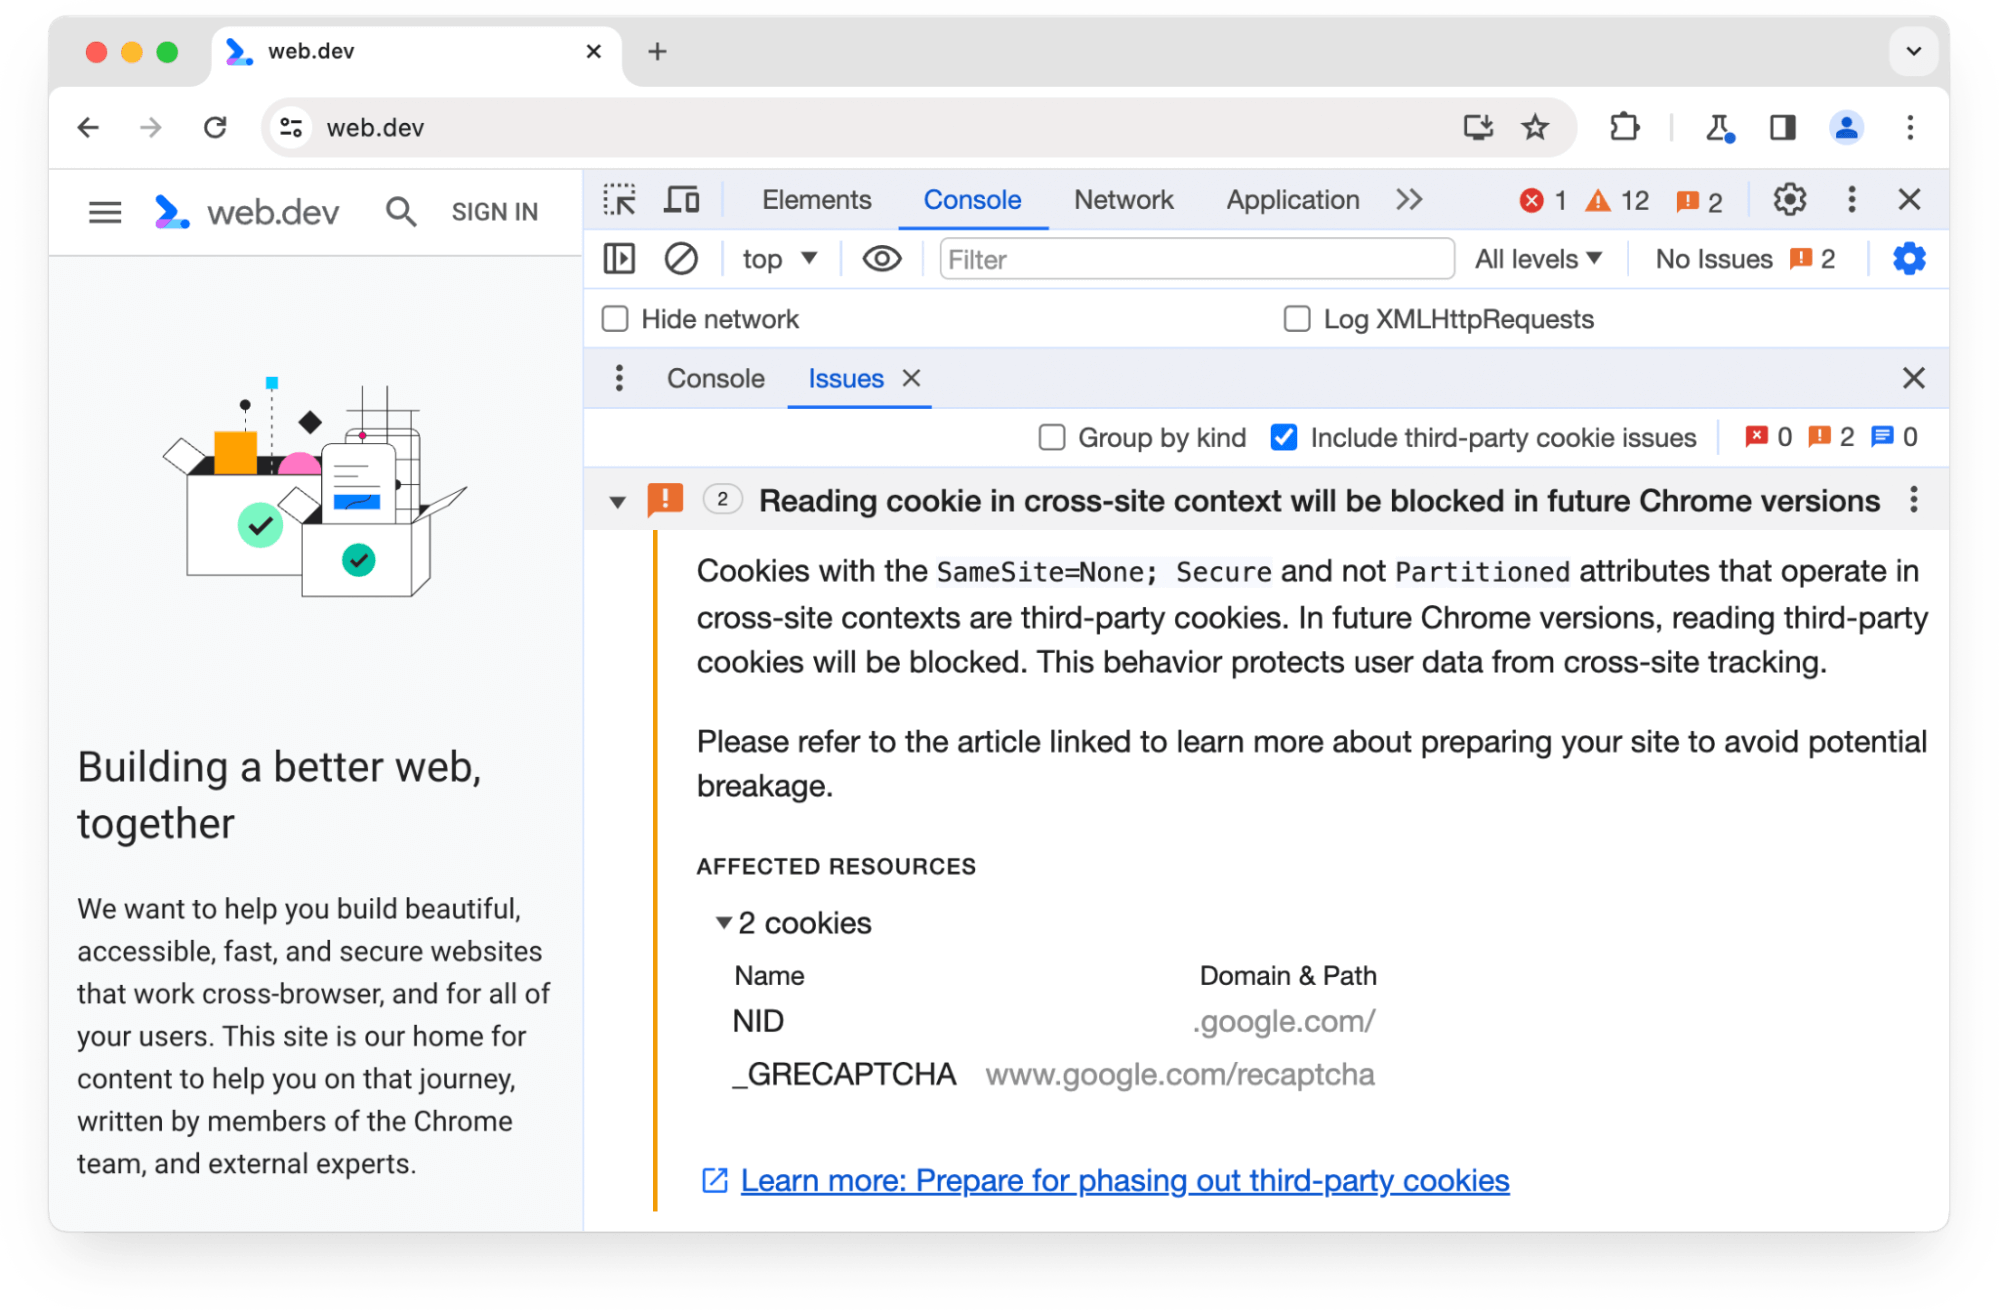 Bảng điều khiển Vấn đề của Chrome Công cụ cho nhà phát triển cảnh báo về 2 cookie của bên thứ ba sẽ bị chặn trong các phiên bản Chrome sau này.